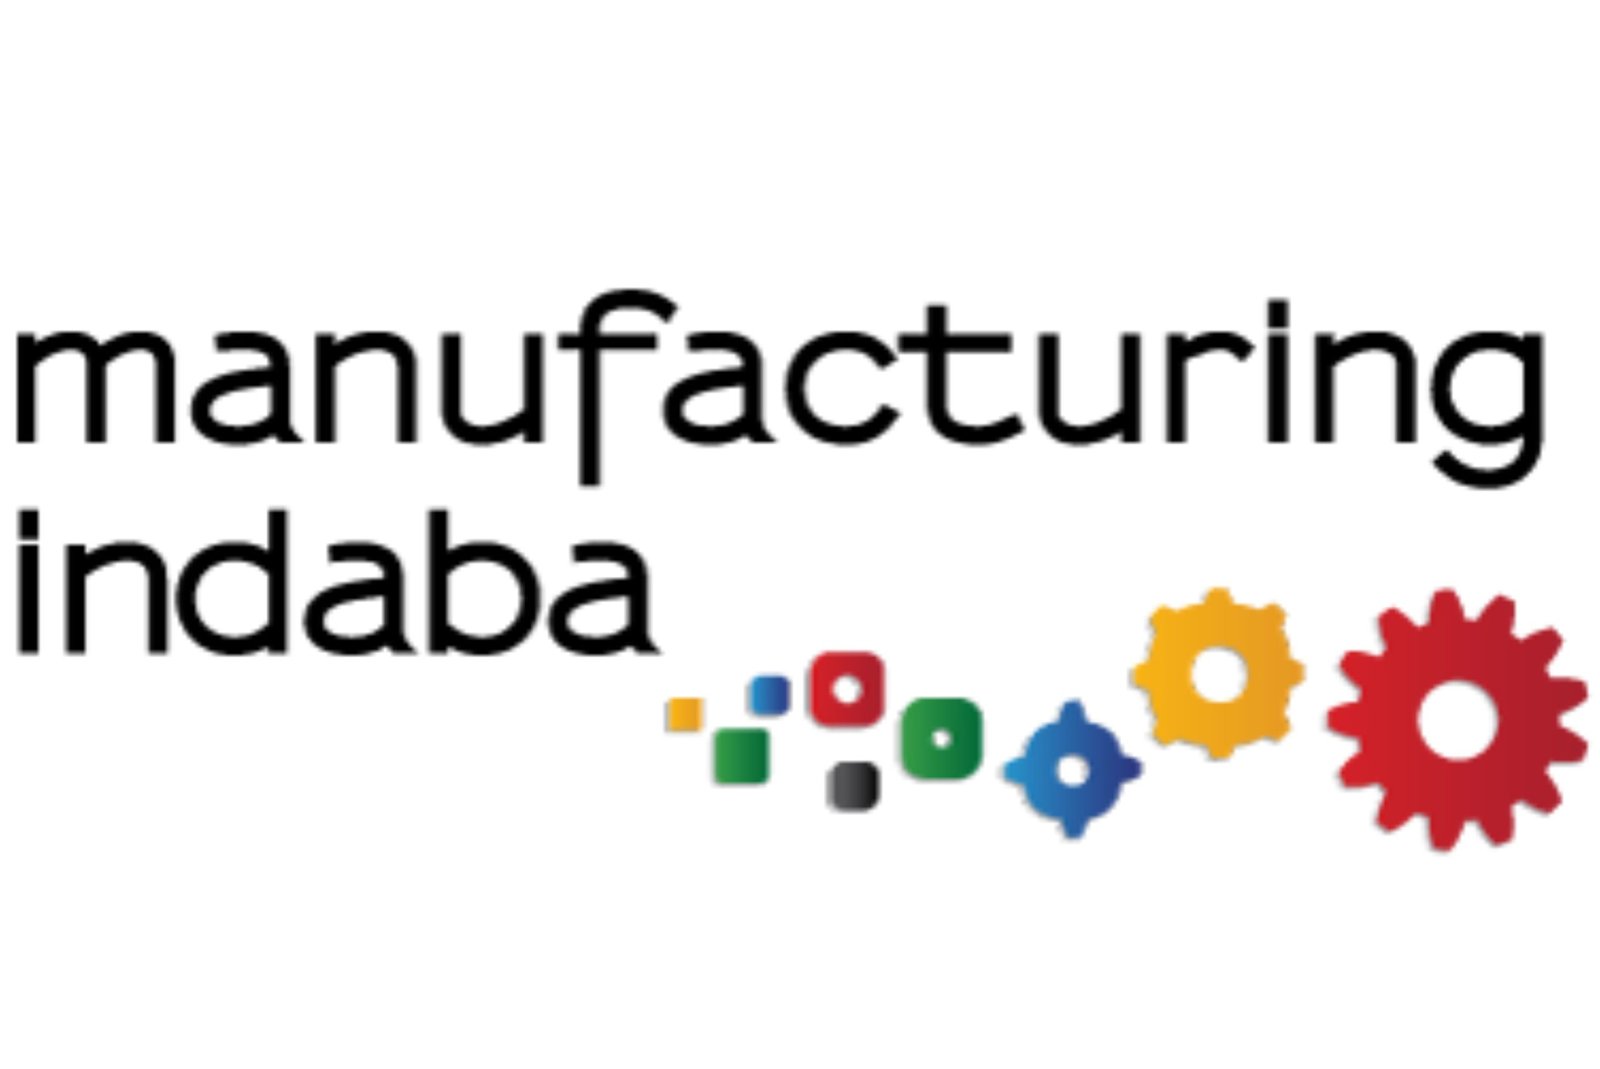 Manufacturing Indaba